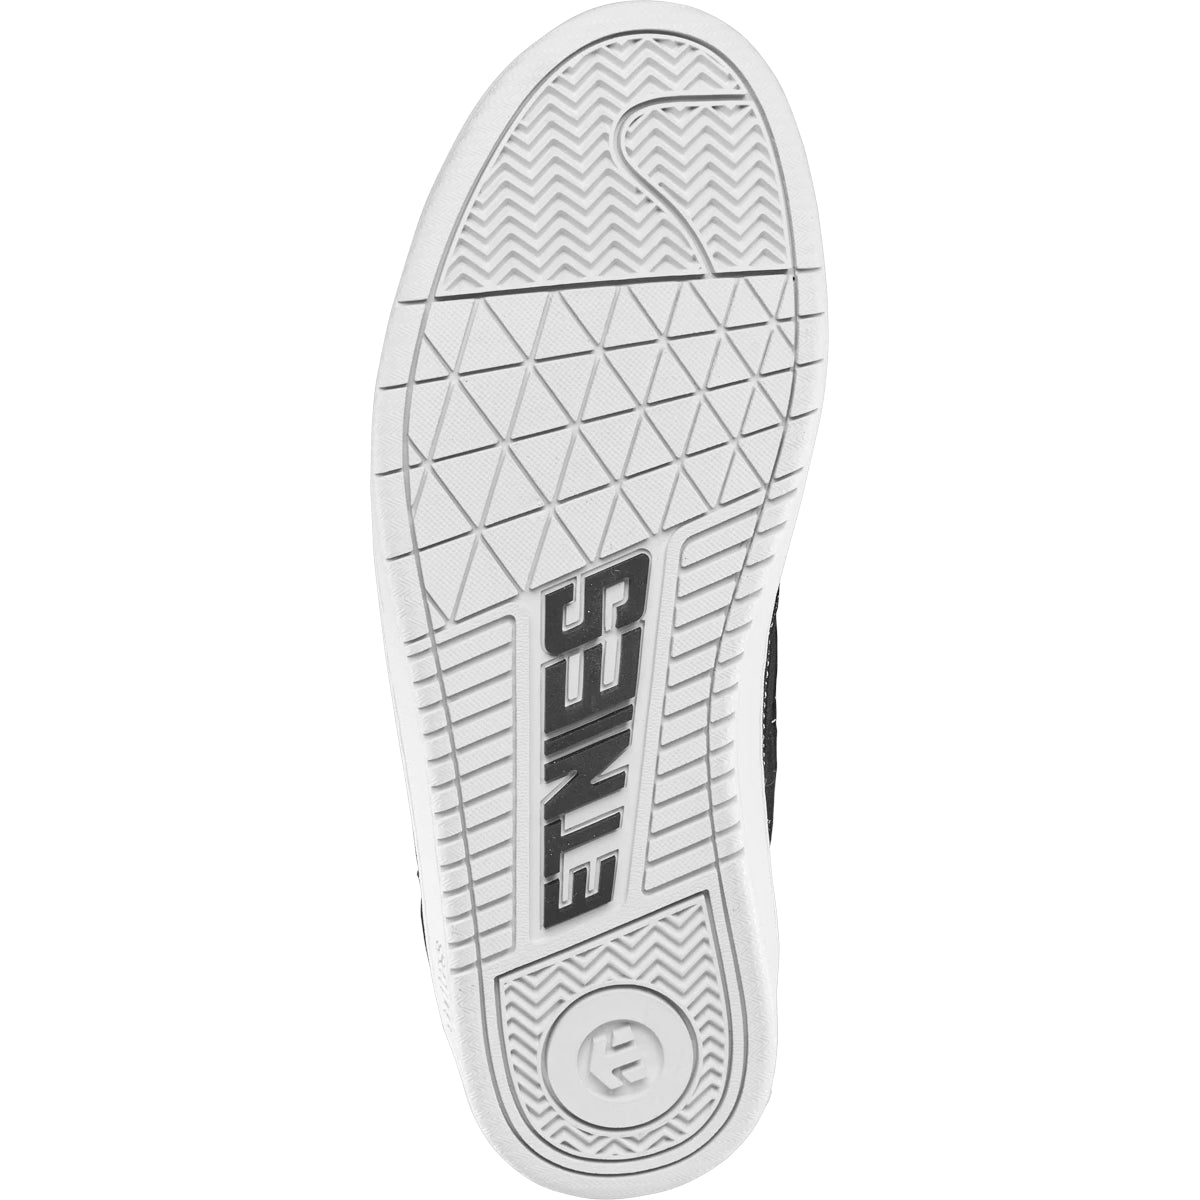 Black/White Snake Etnies Skate Shoe Bottom